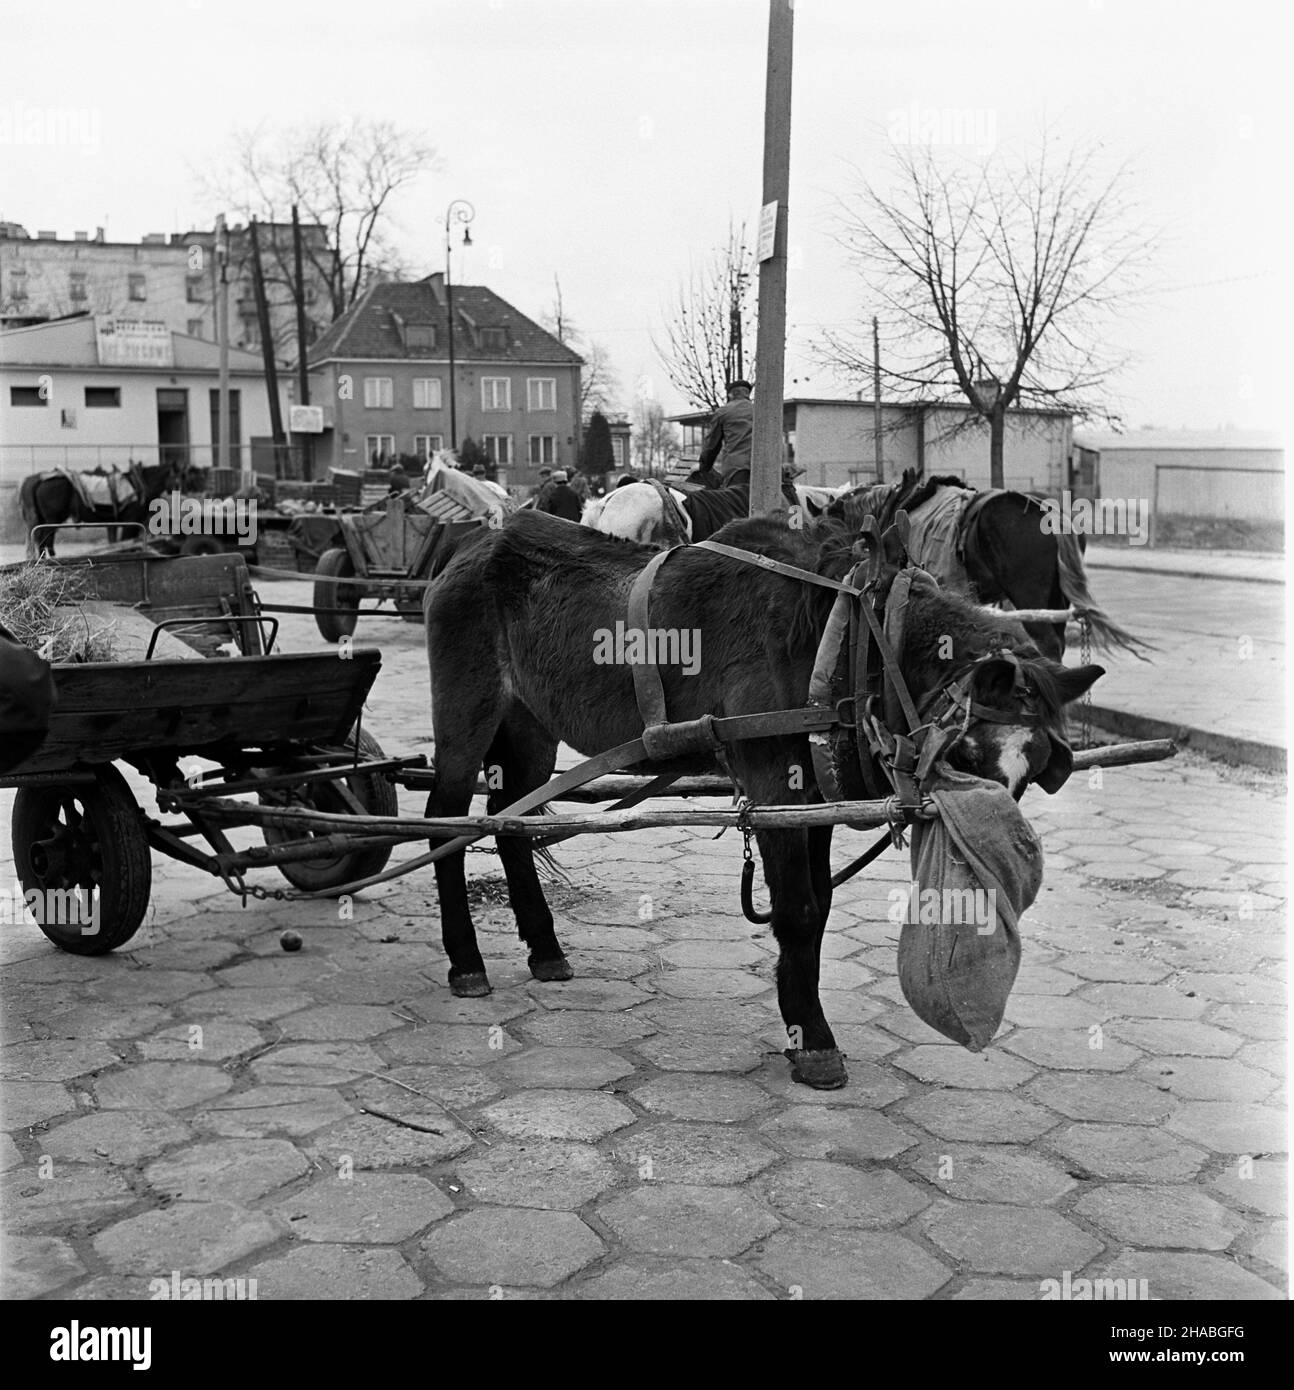 Warszawa, 1969-10-01. Konie na targu ¿ywnoœci. mb  PAP/Boles³aw Miedza    Dok³adny dzieñ wydarzenia nieustalony.      Warsaw, Oct. 1, 1969. Horses at a food market in Warsaw. Pictured: a horse harnassed to a cart.  mb  PAP/Boleslaw Miedza Stock Photo